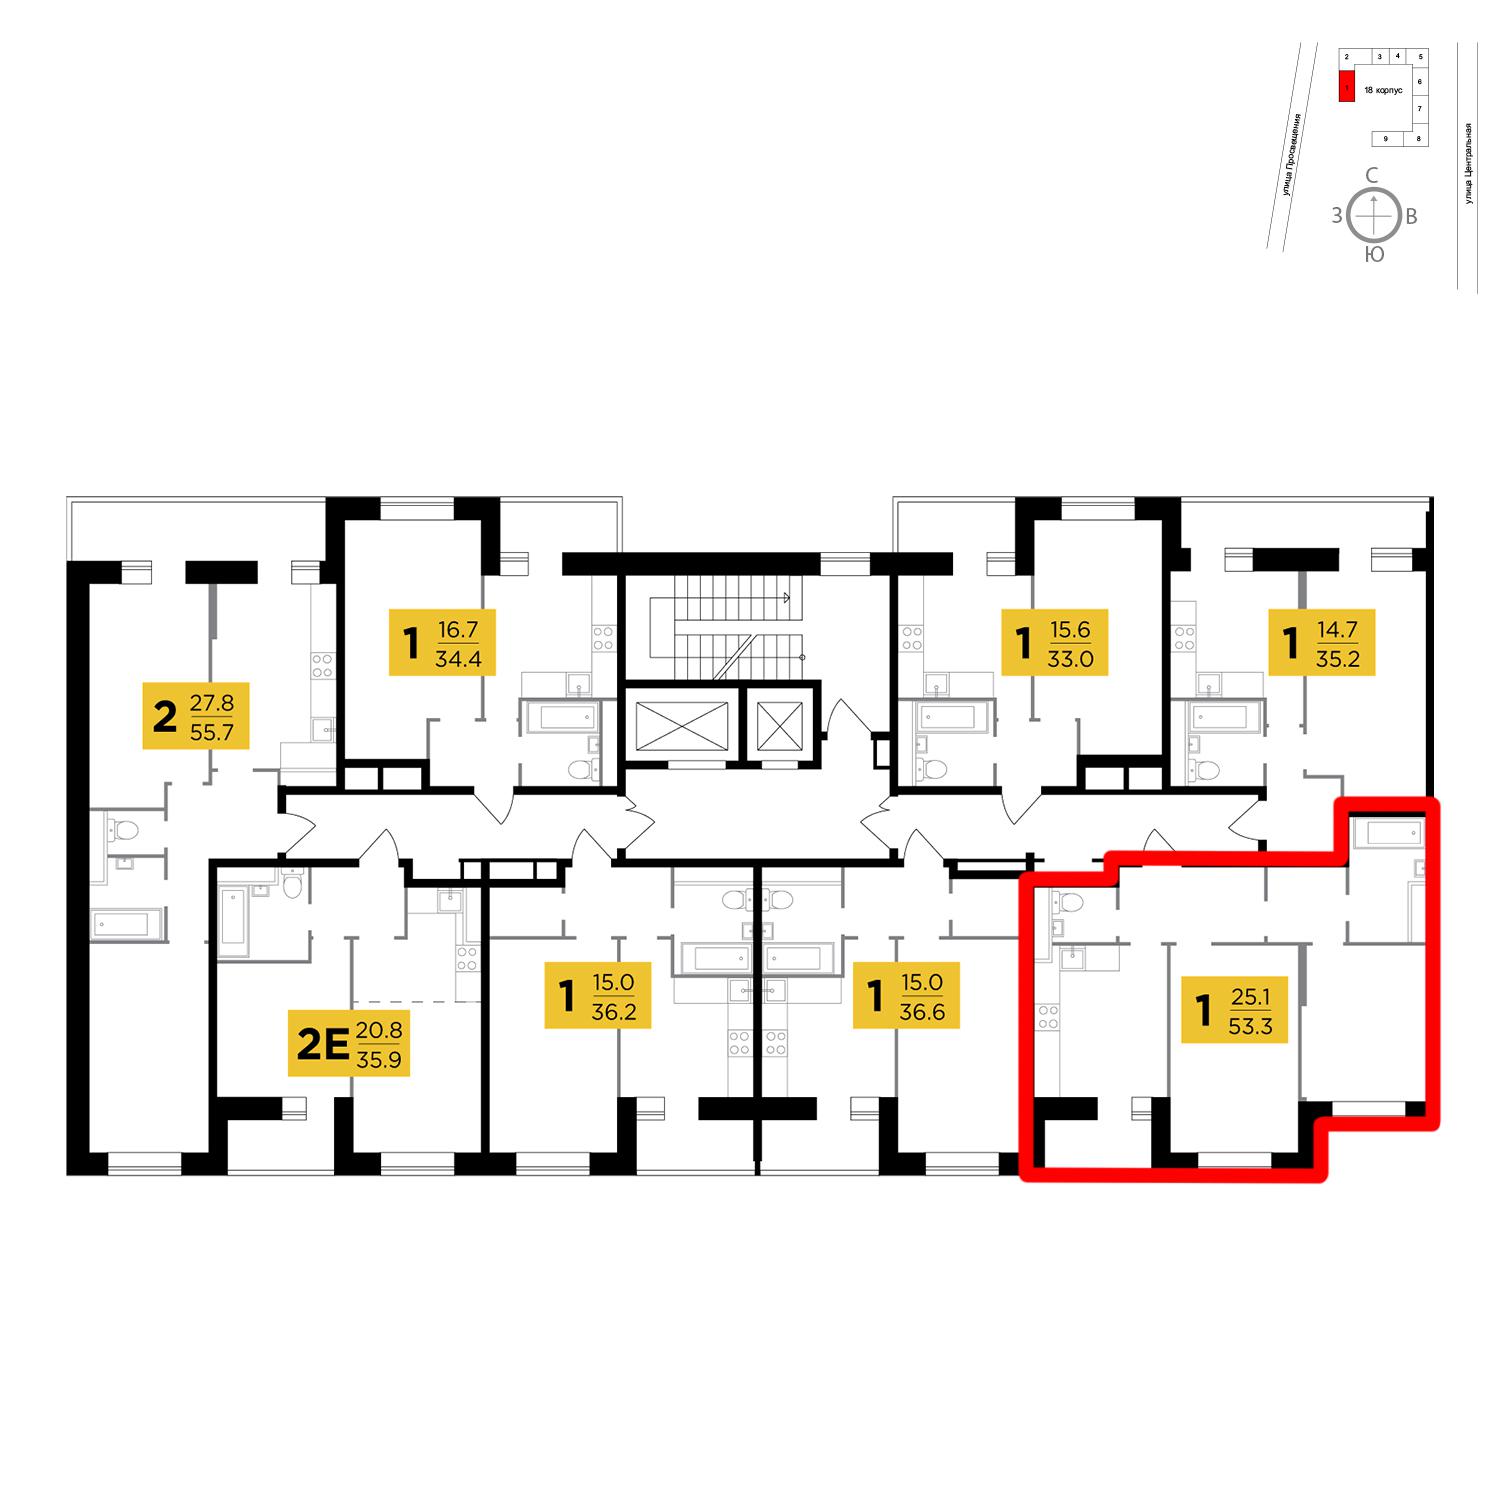 Продаётся 2-комнатная квартира в новостройке 53.3 кв.м. этаж 14/16 за 3 725 296 руб 